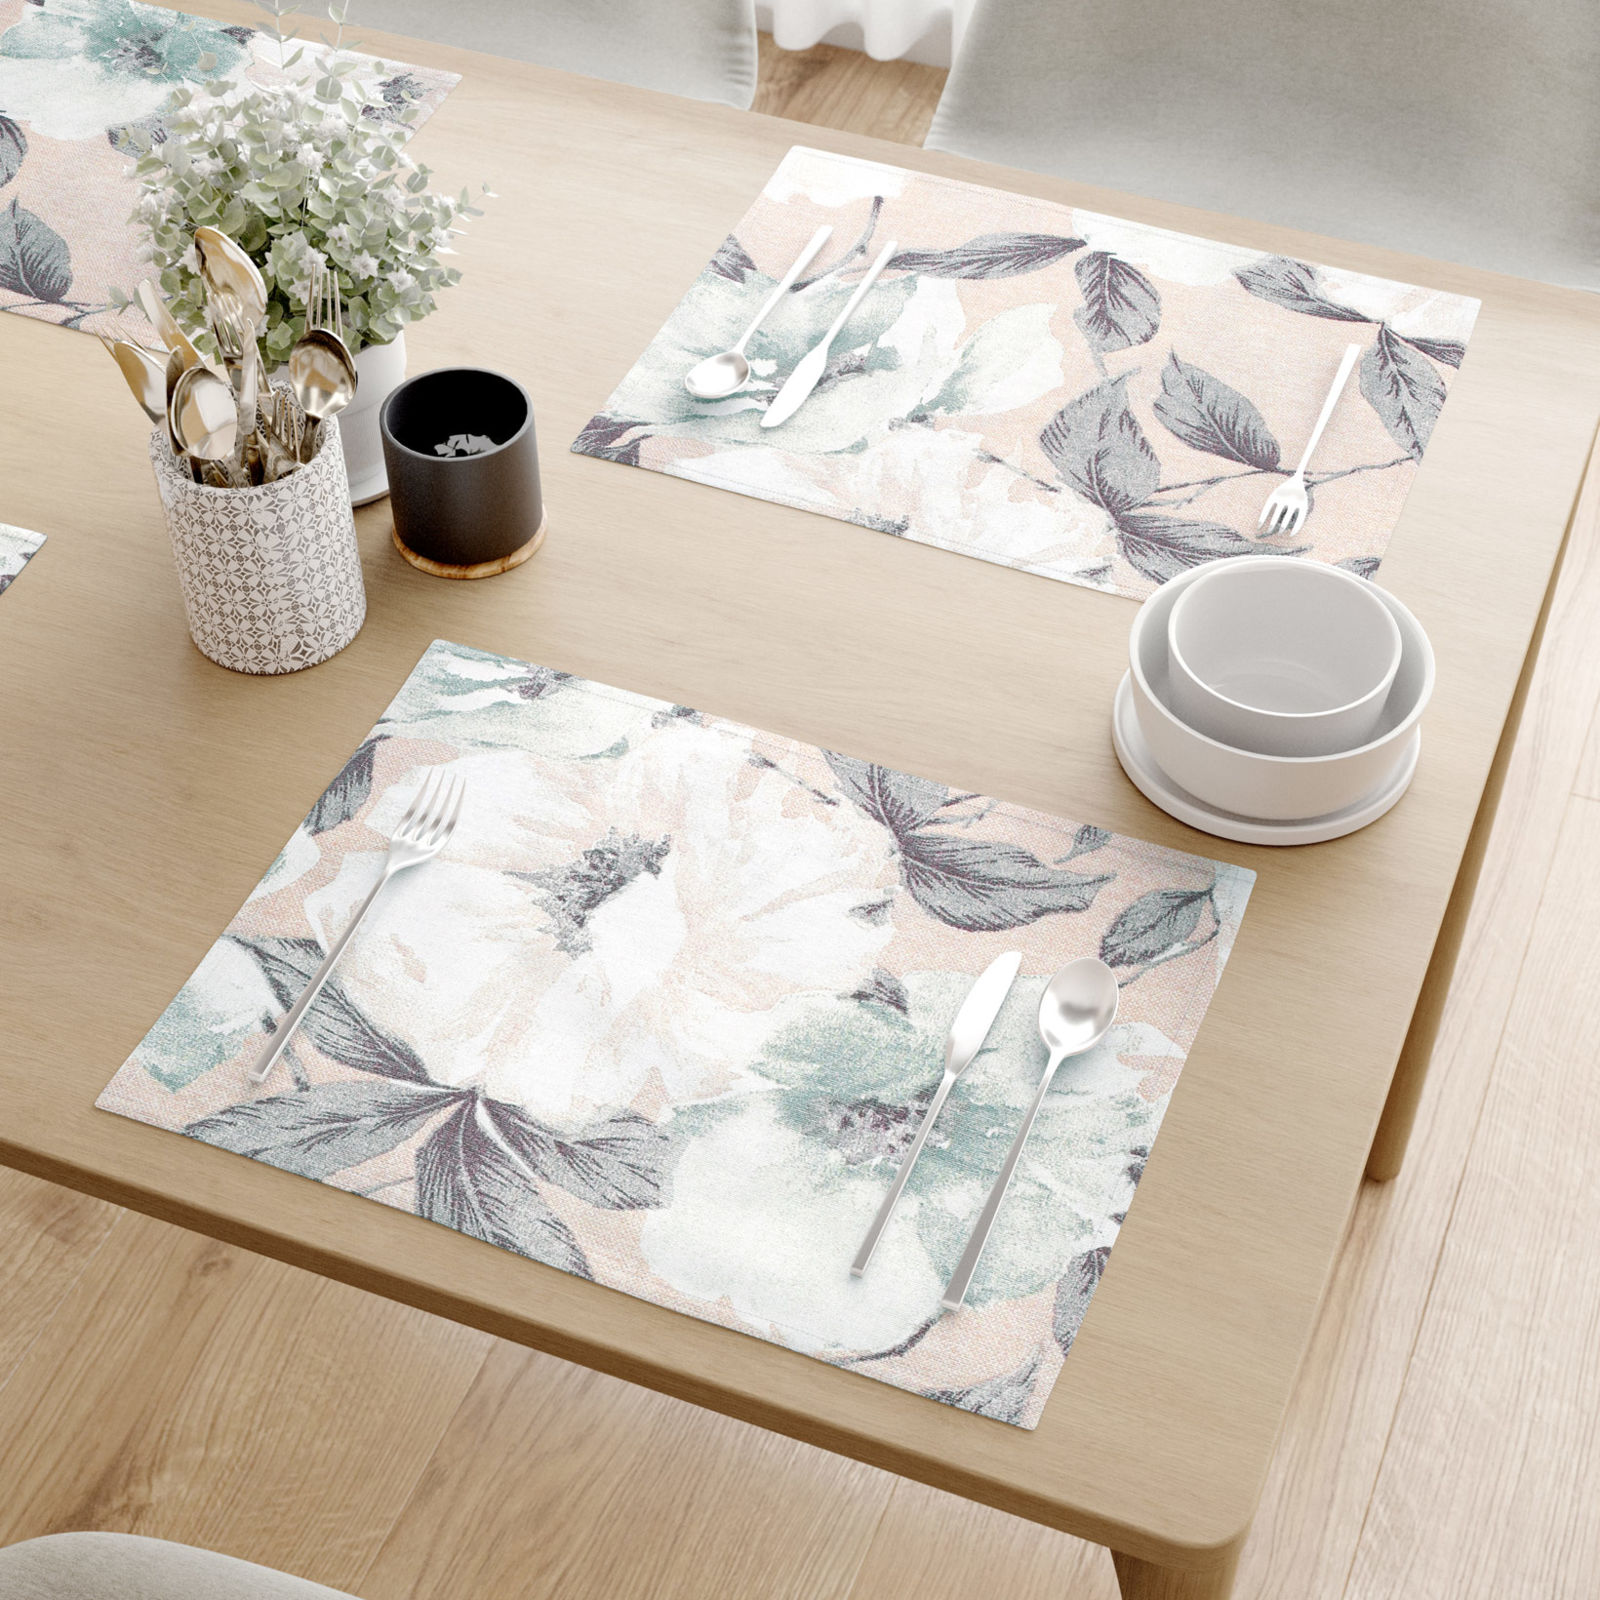 Podkładka na stół Loneta - białe i szałwiowe kwiaty z liśćmi - 2szt.